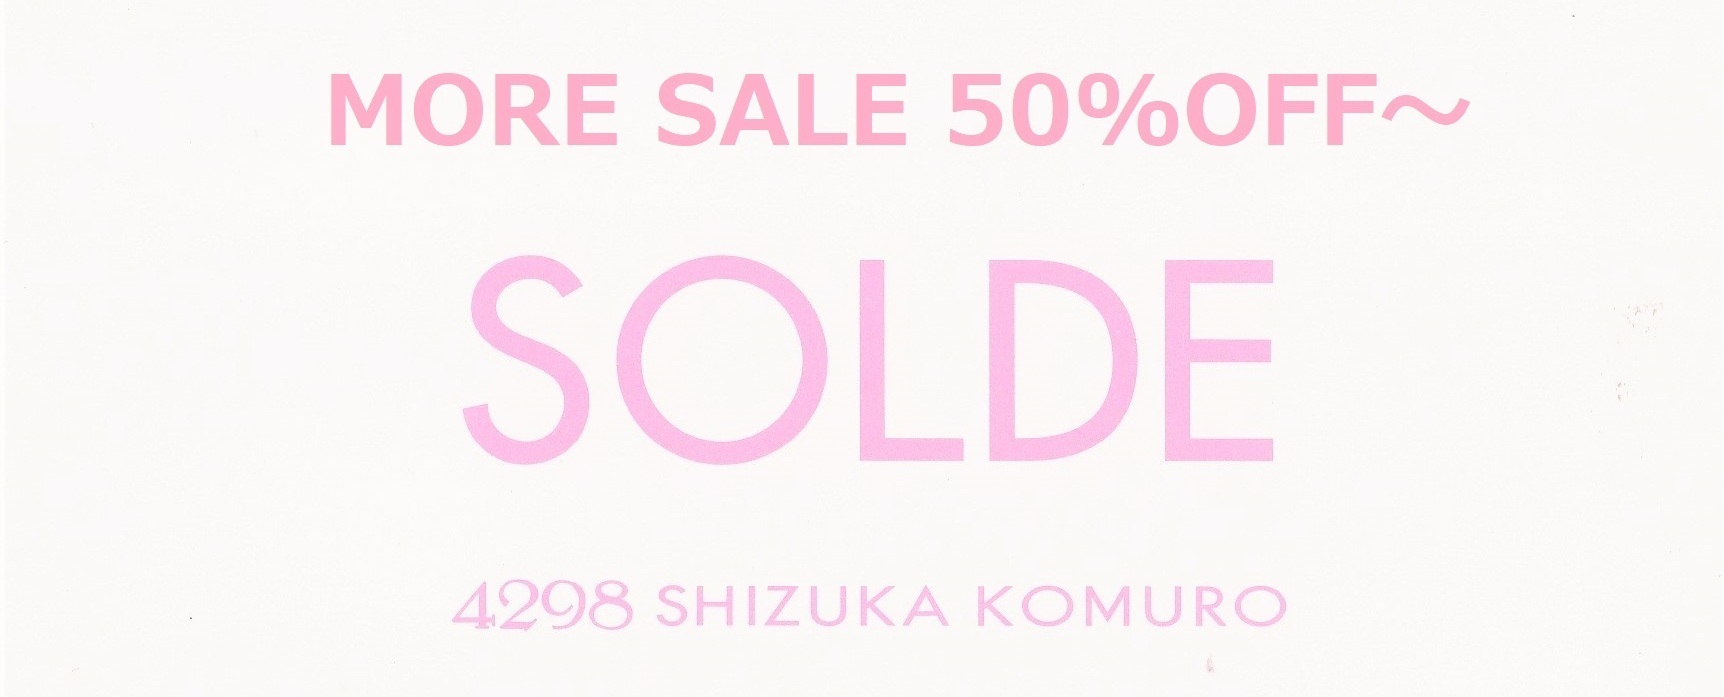 ファッション通販の4298 SHIZUKA KOMURO │ 4298シヅカコムロ 公式通販